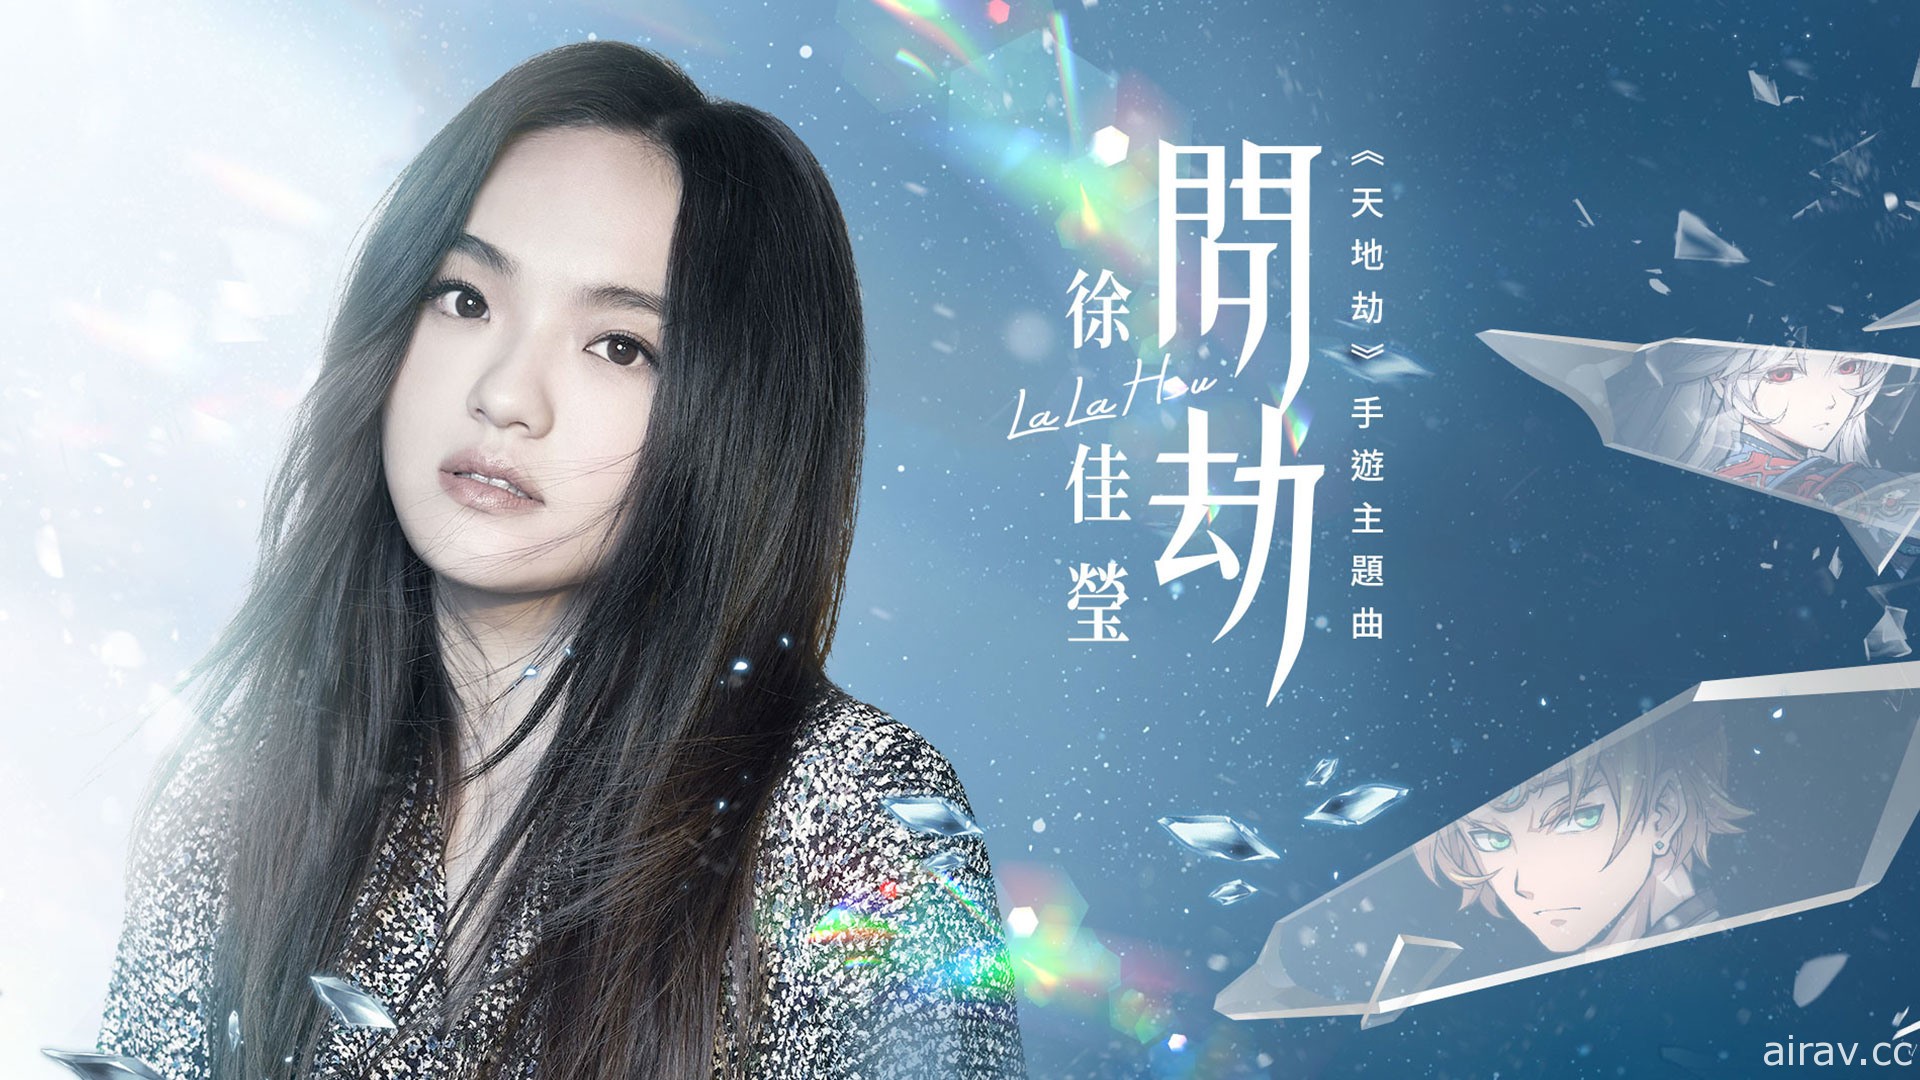 《天地劫》主題曲「問劫」MV 曝光 邀請金曲歌后 LaLa 徐佳瑩與導演比爾賈合力打造